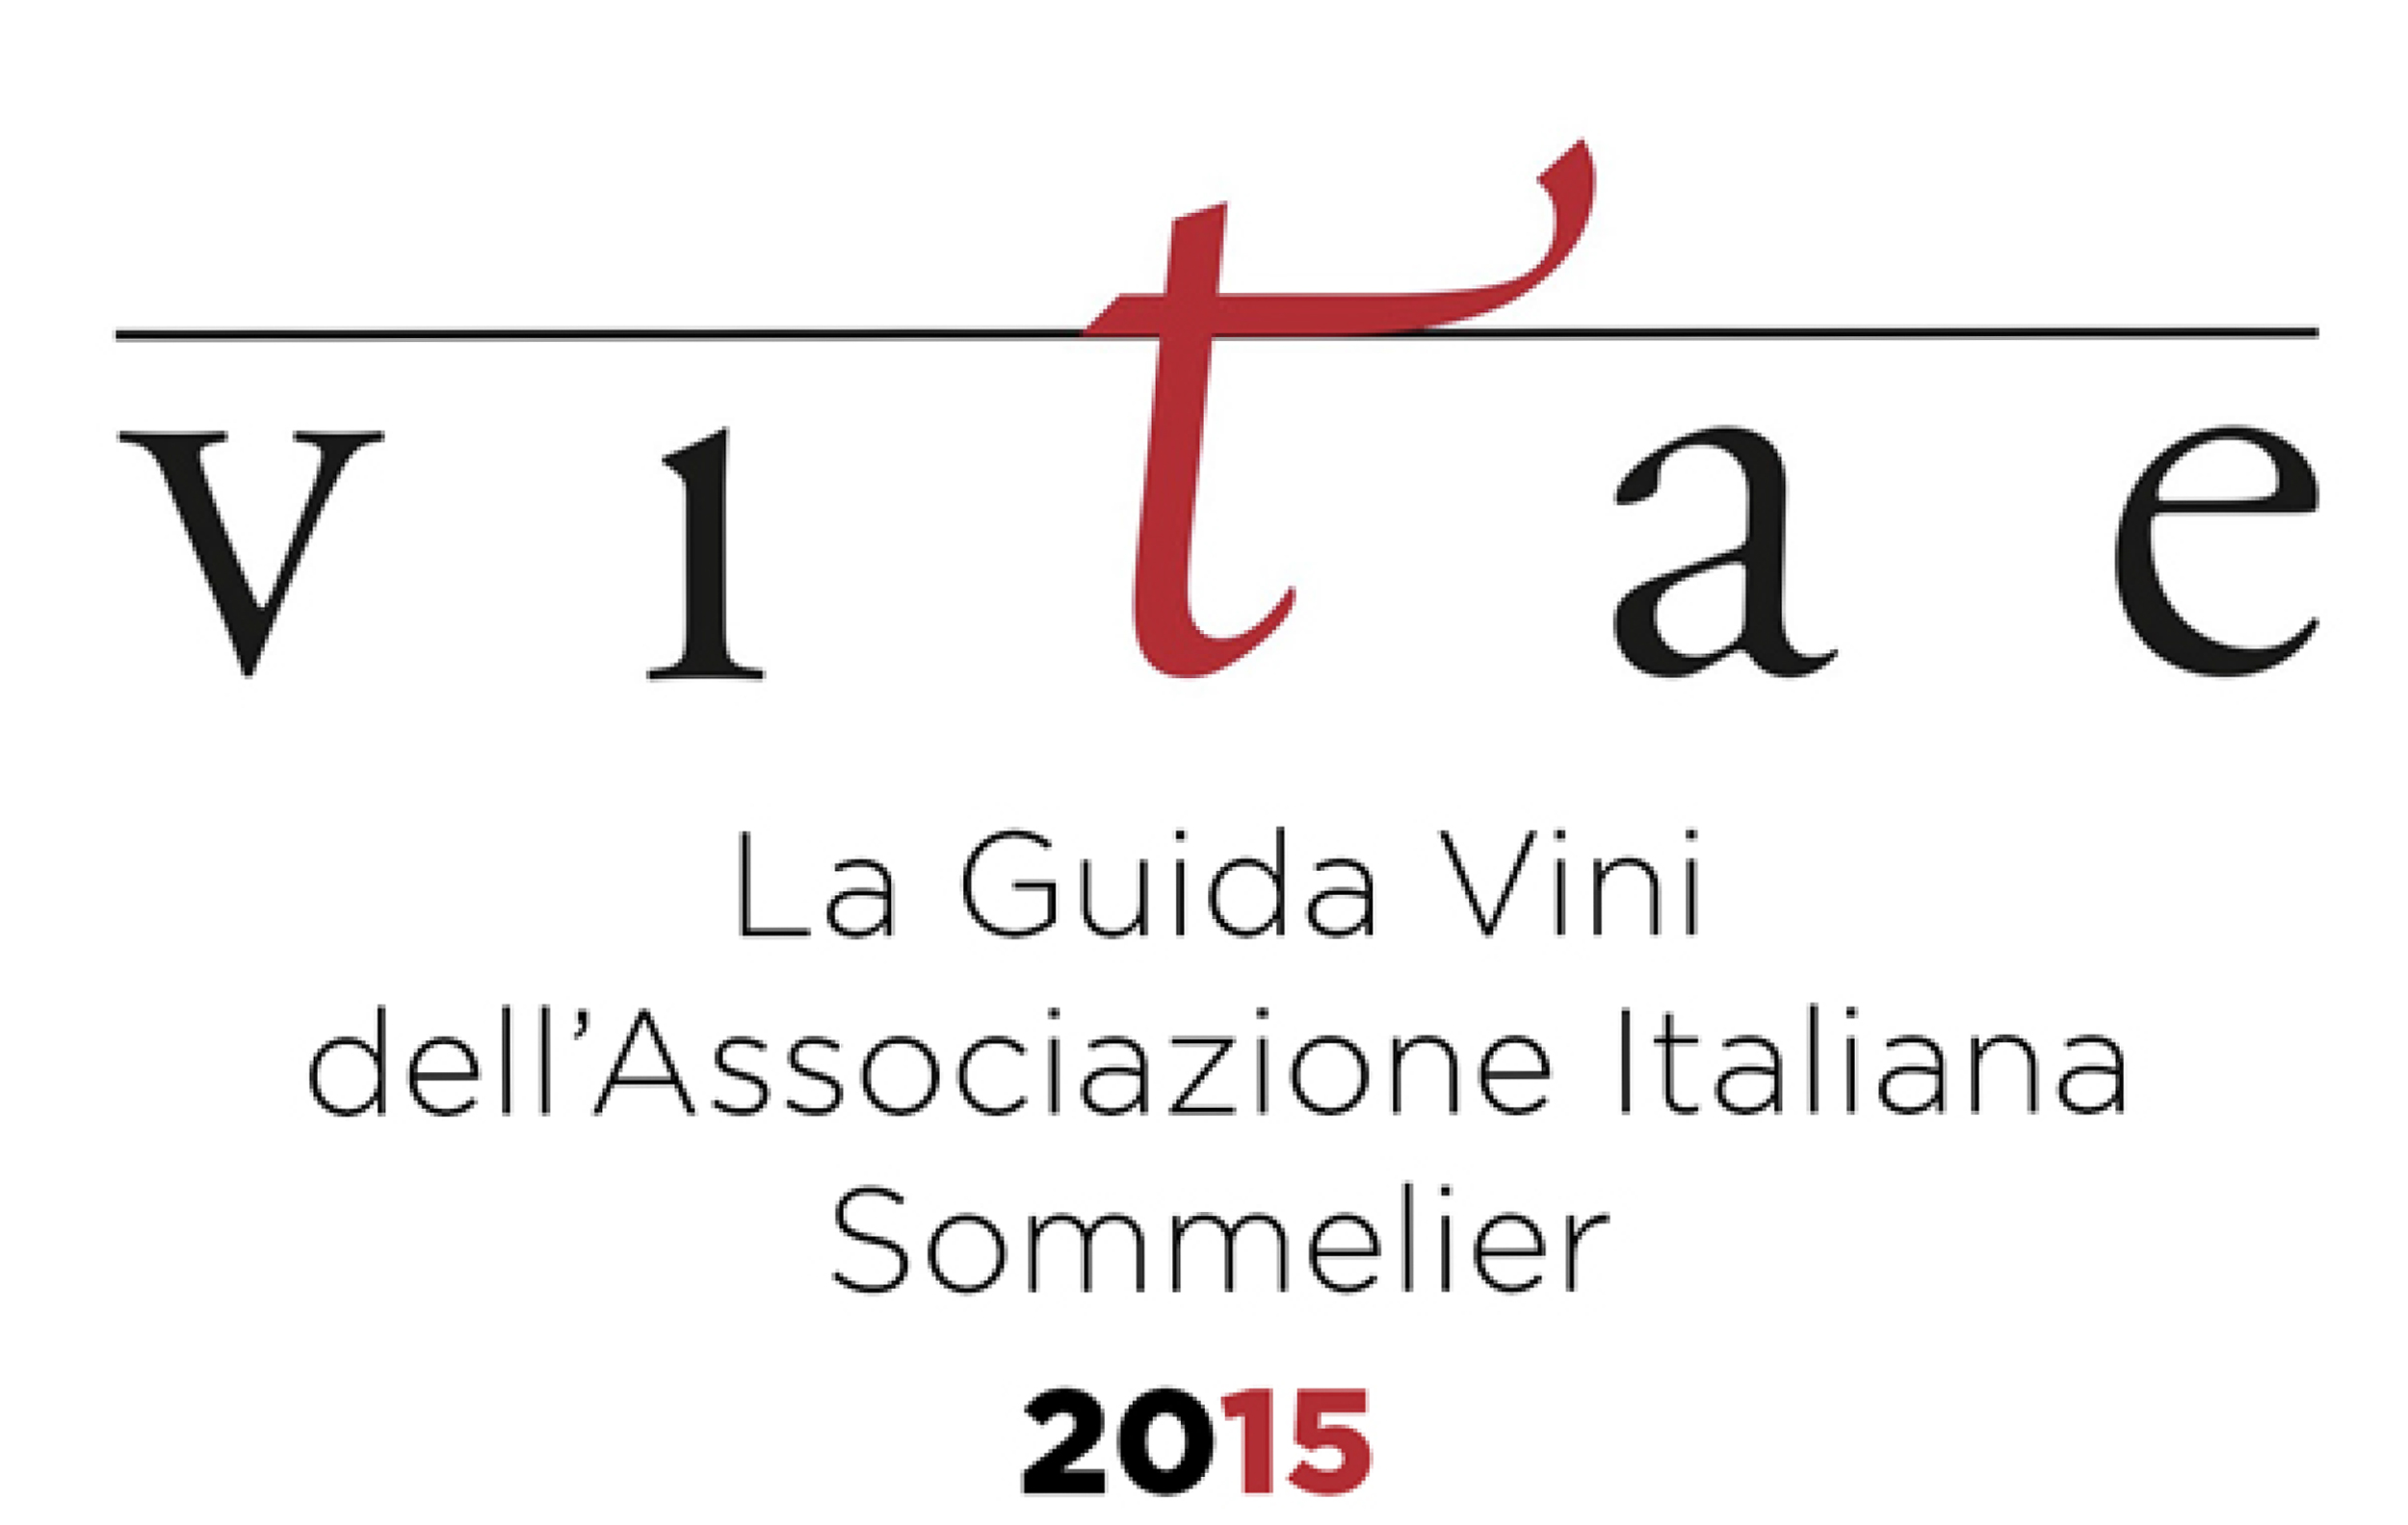 Copertina Guida Vini 2015 Vitae Associazione Italiana Sommelier recensione per i Vini Cacciagrande, Azienda Vinicola Toscana.